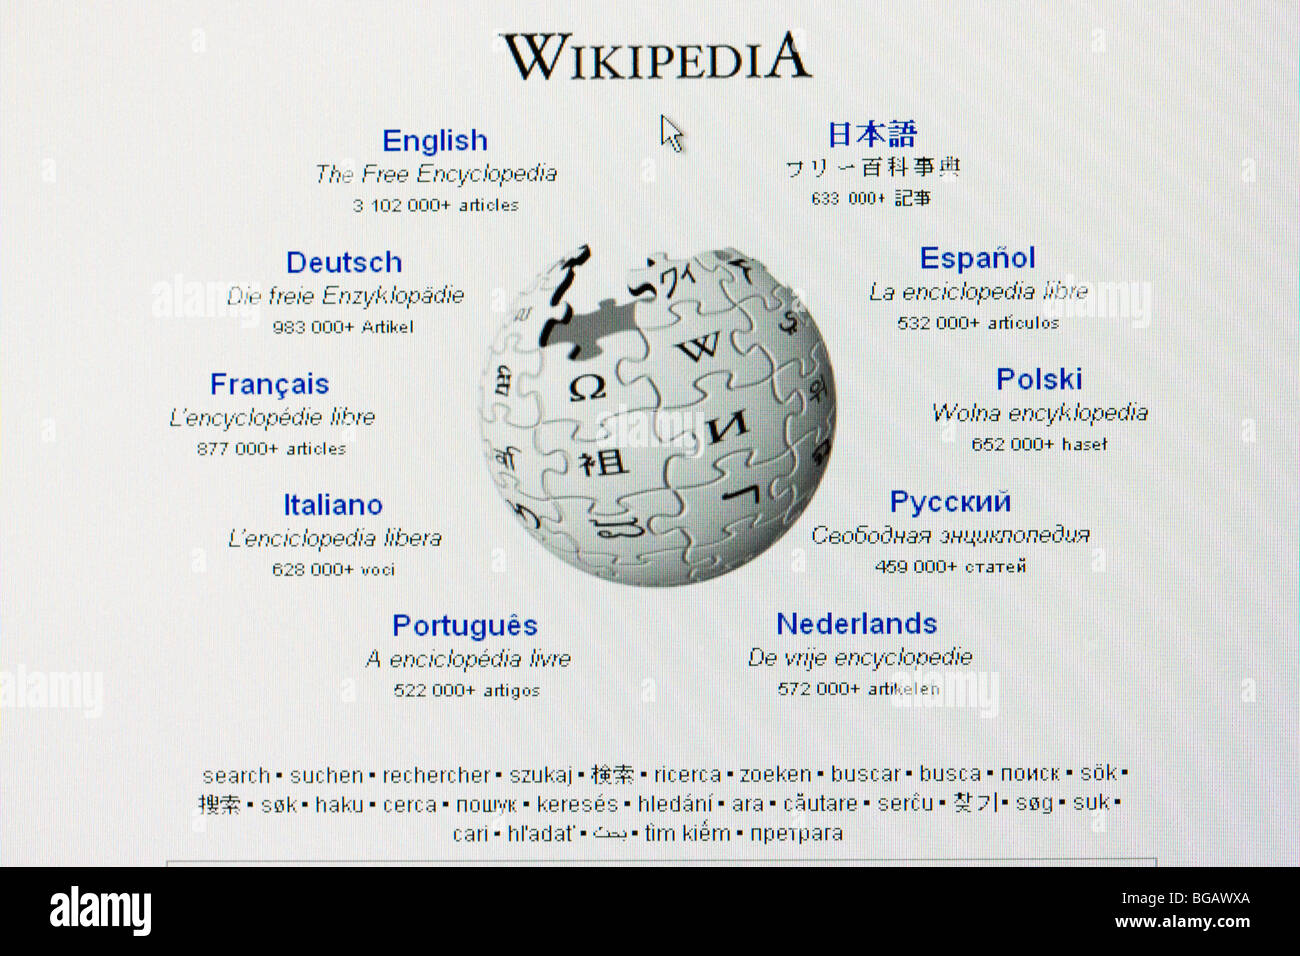 Televisión inteligente - Wikipedia, la enciclopedia libre